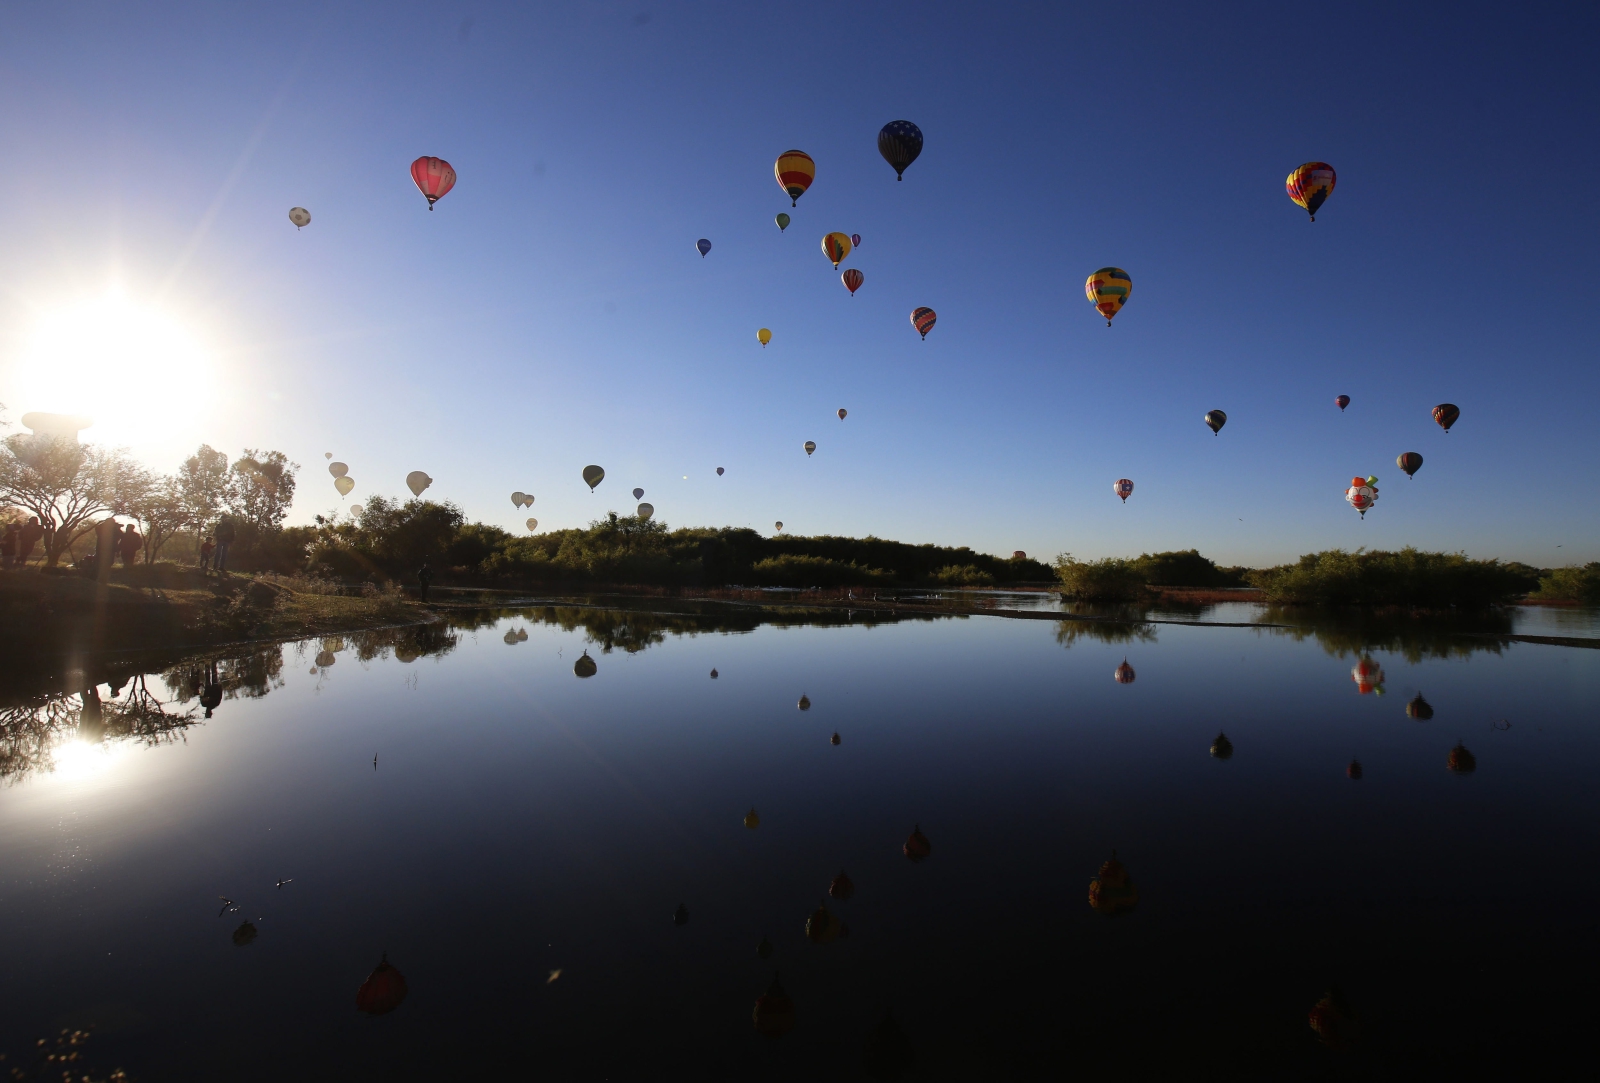 Dziesiątki balonów wypełnionych ciepłym powietrzem wznoszą się nad Leon w Meksyku w trakcie Międzynarodowego Festiwalu Balonów.